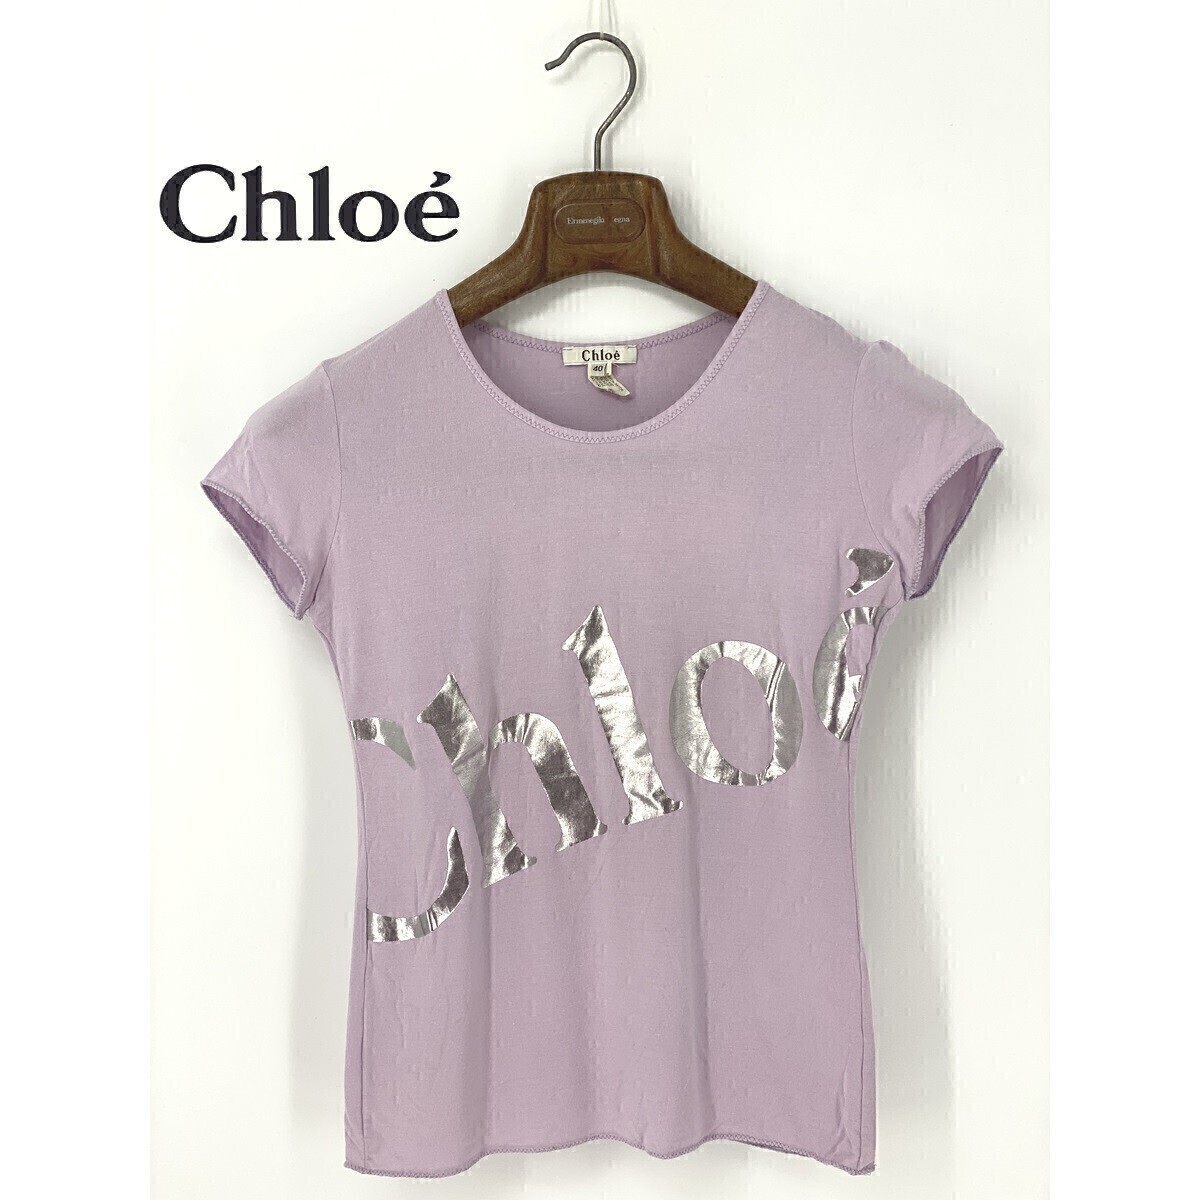 A8812/... товар в хорошем состоянии   весна   лето  Chloe ... ...  короткие рукава  ... лого    принт   стрейч   футболка  ... 40 S...  фиолетовый    Италия  пр-во    женский 